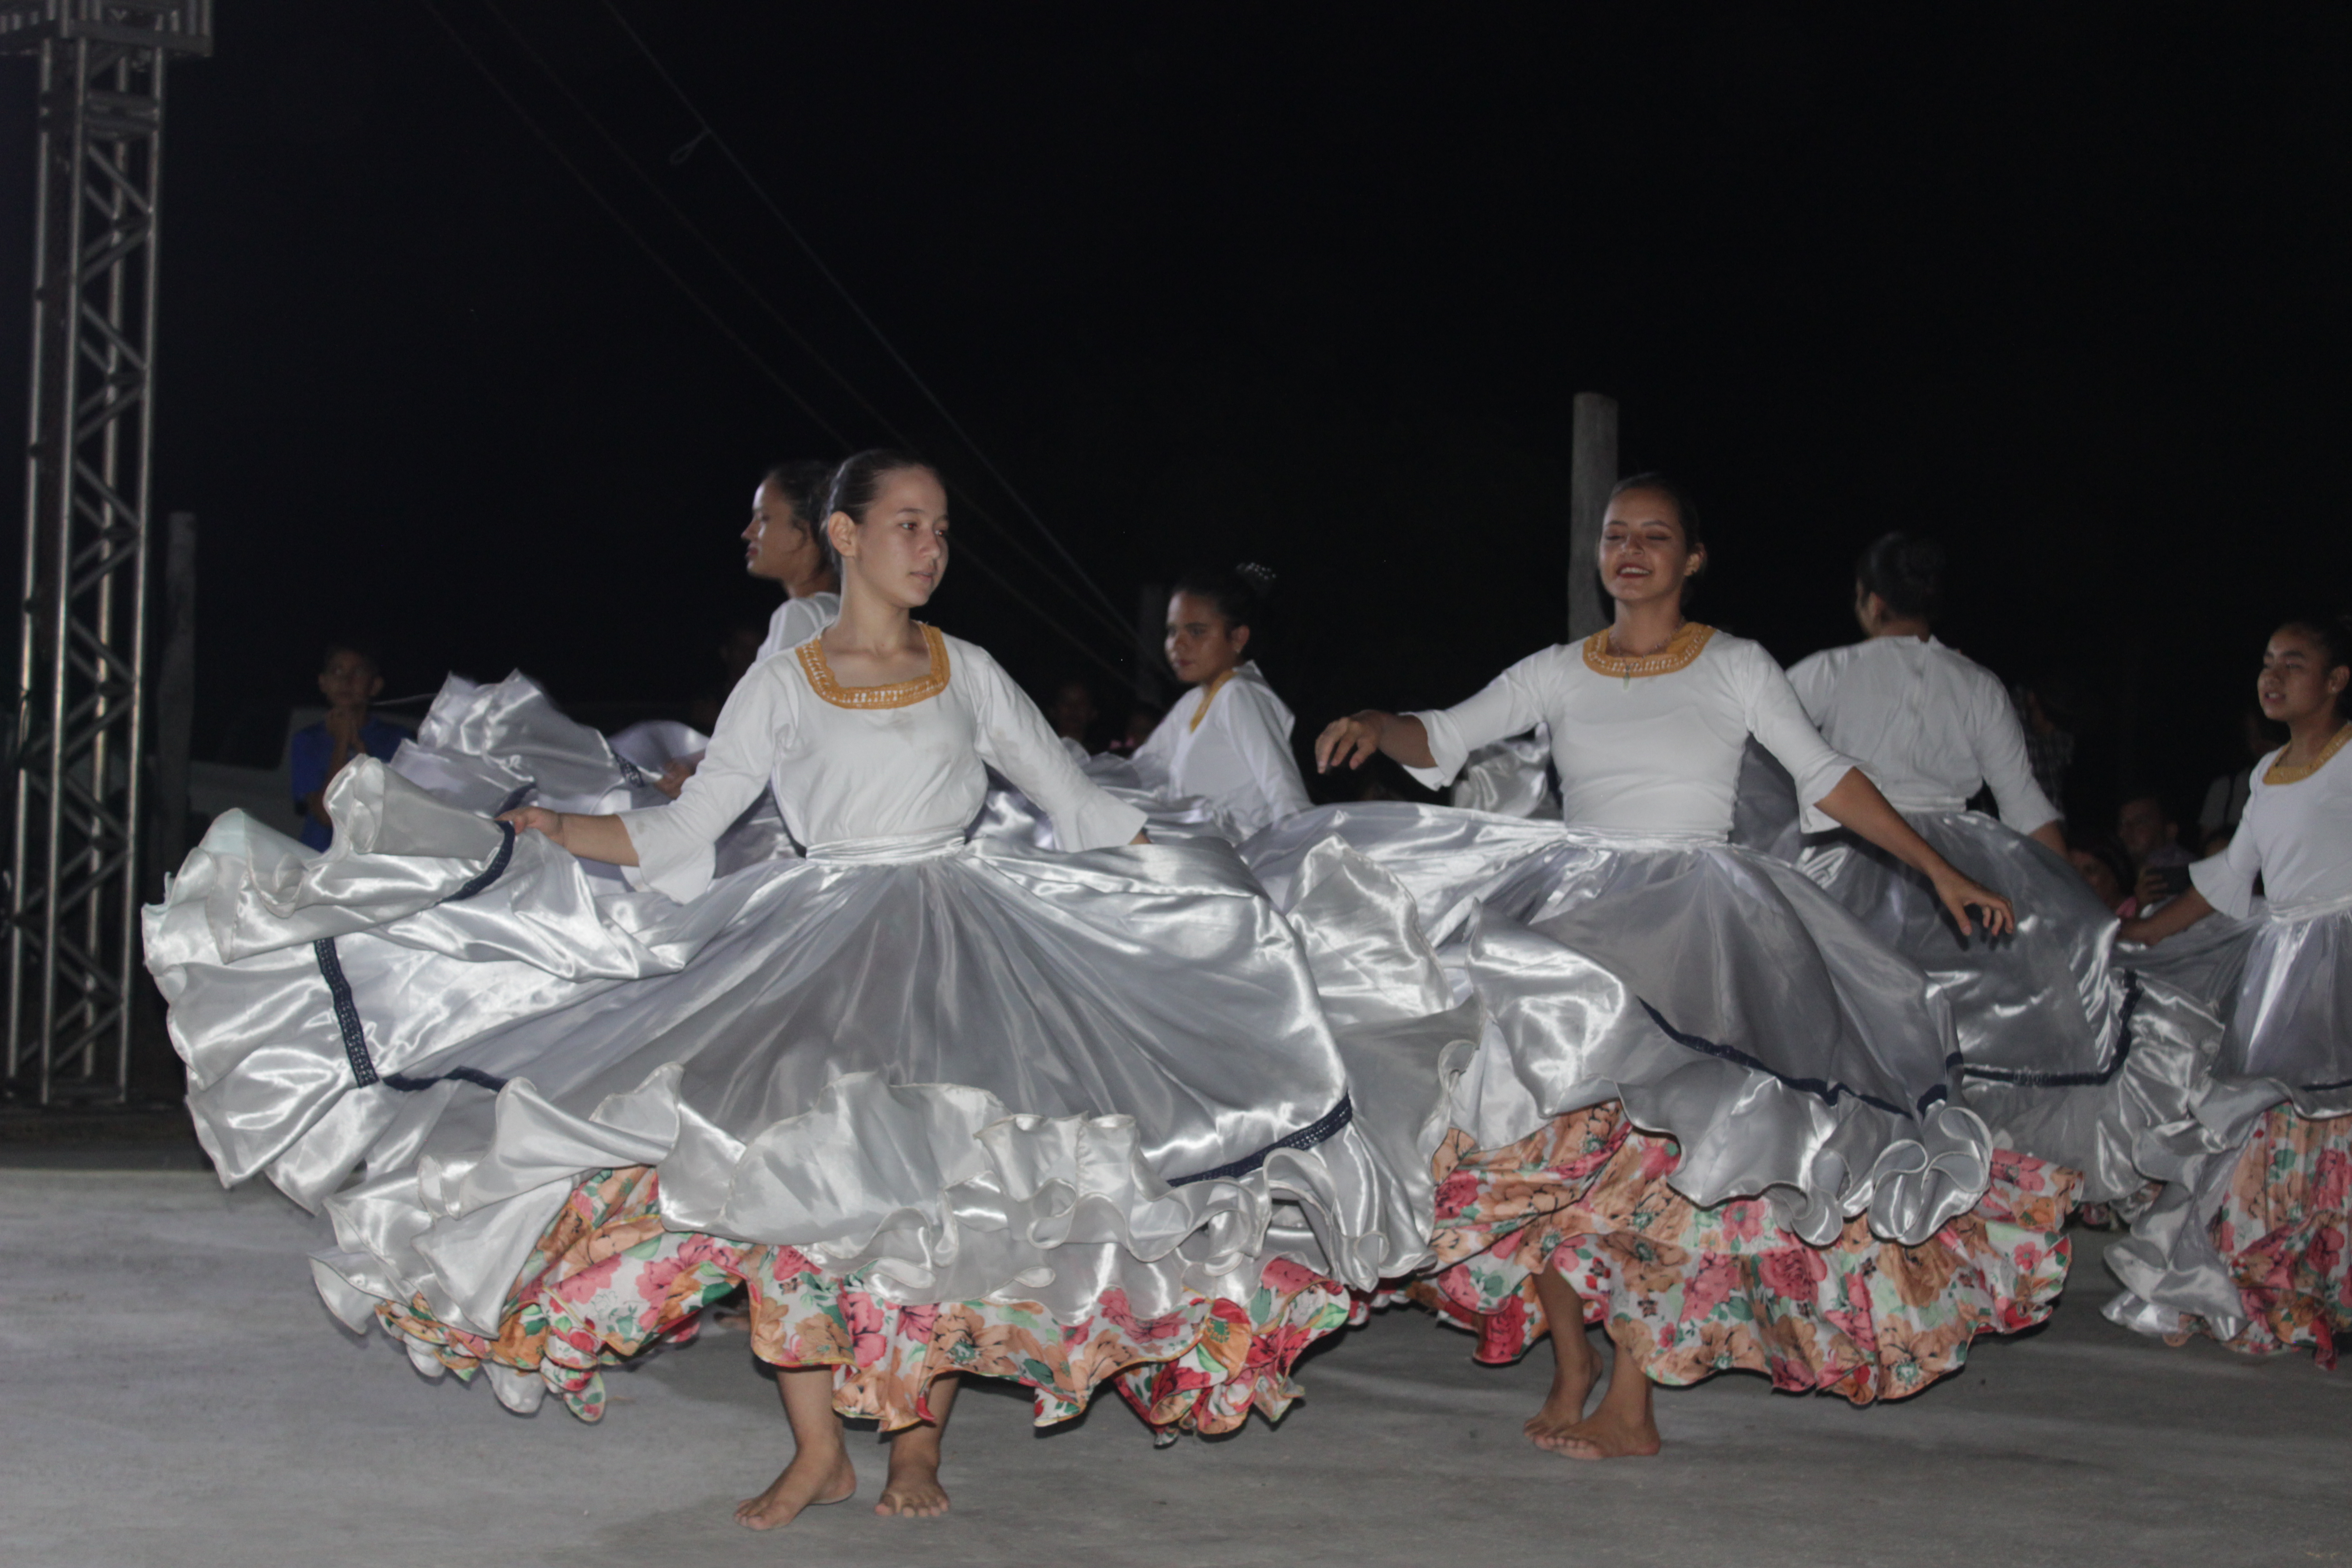 Apresentação do Coral de Meninas Cantoras de Porto Murtinho no 2º Festival Yrembe’y